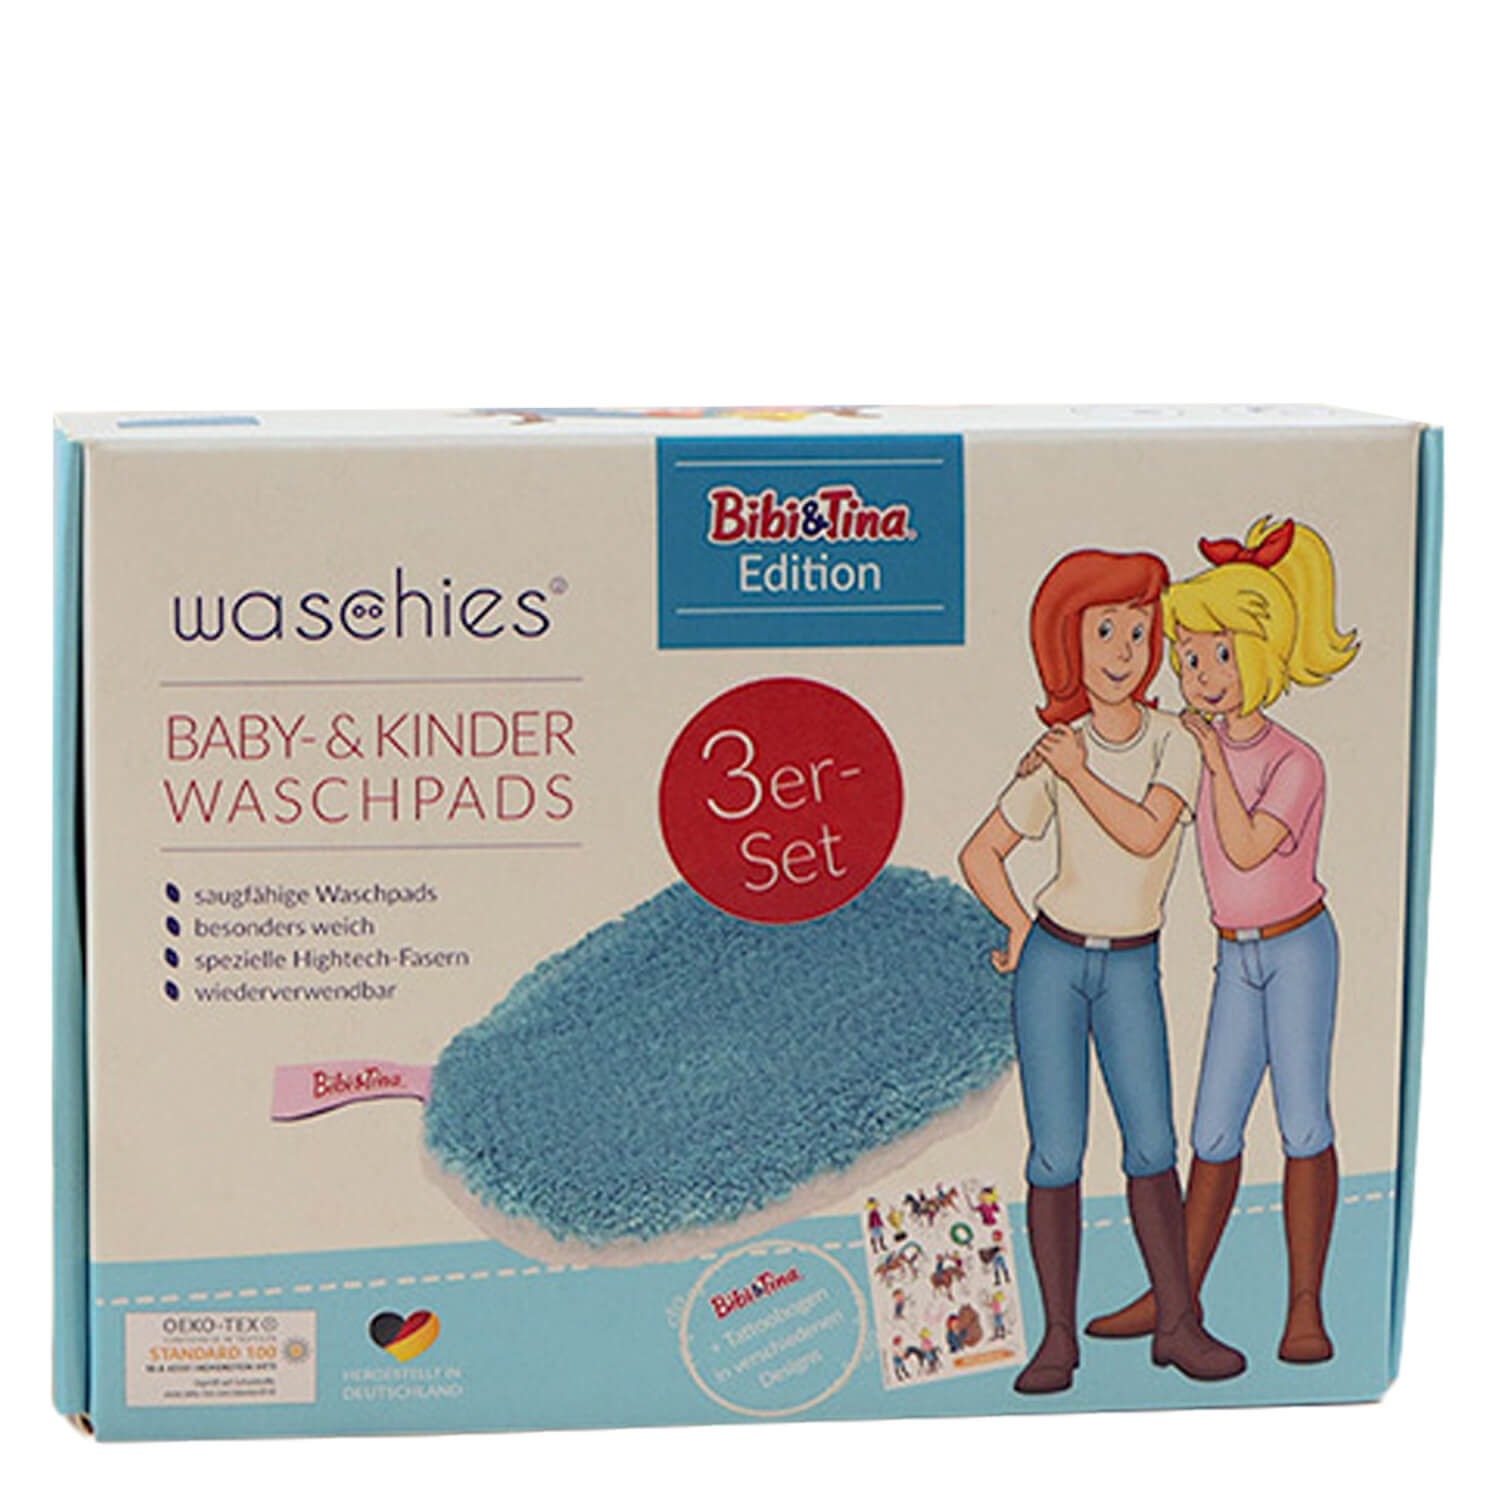 Product image from Waschies Kidsline - Waschpads für Babys & Kinder Bibi&Tina Blau Edition